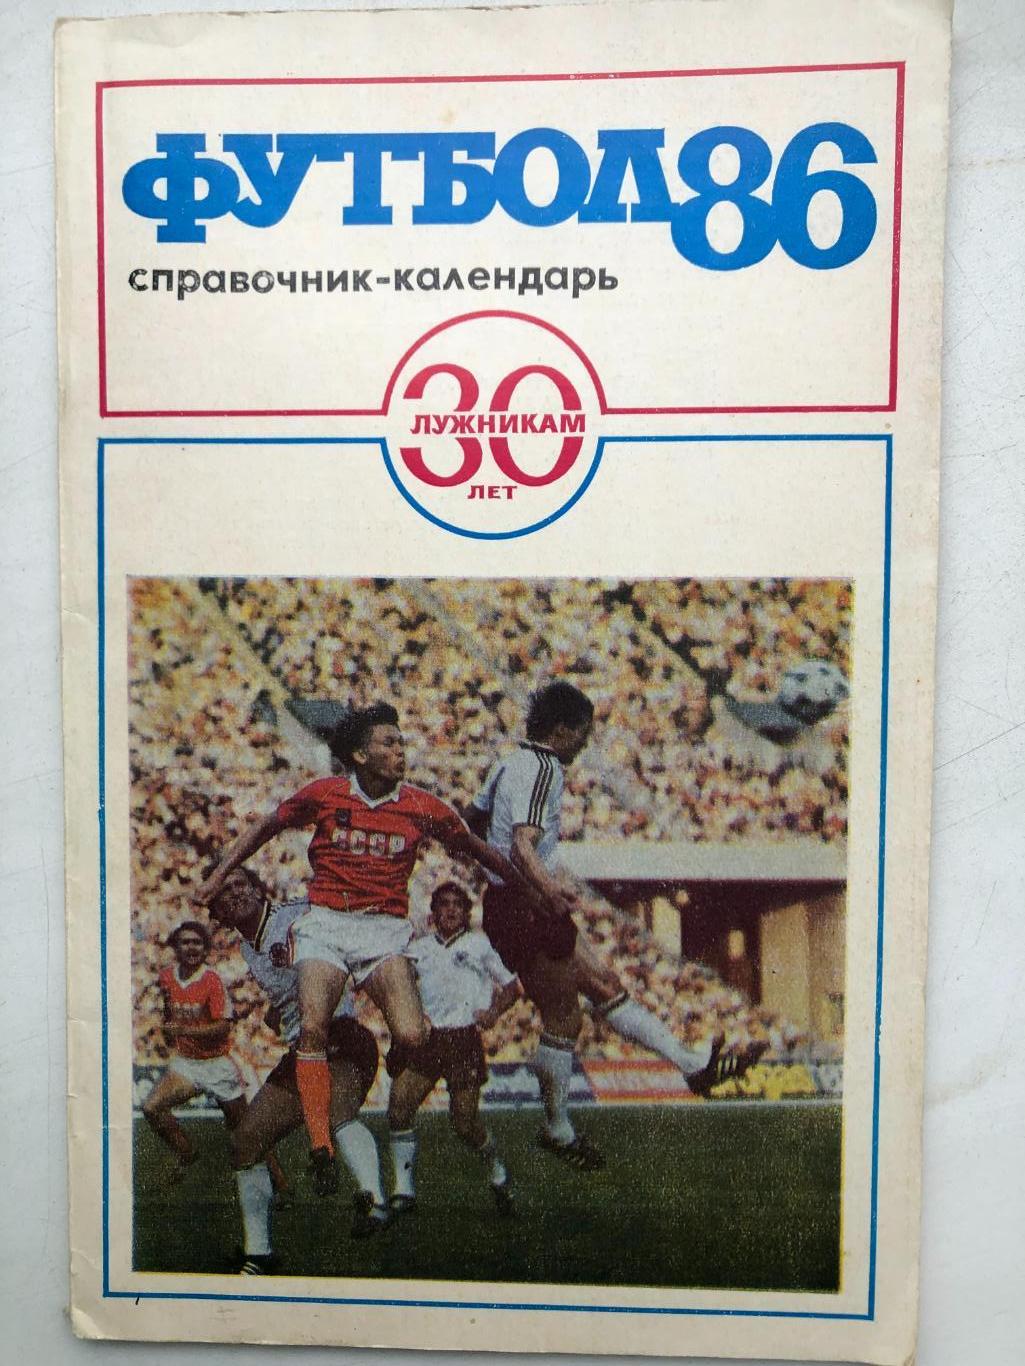 Футбол 86 справочник-календарь Центральный стадион имени Ленина 1986